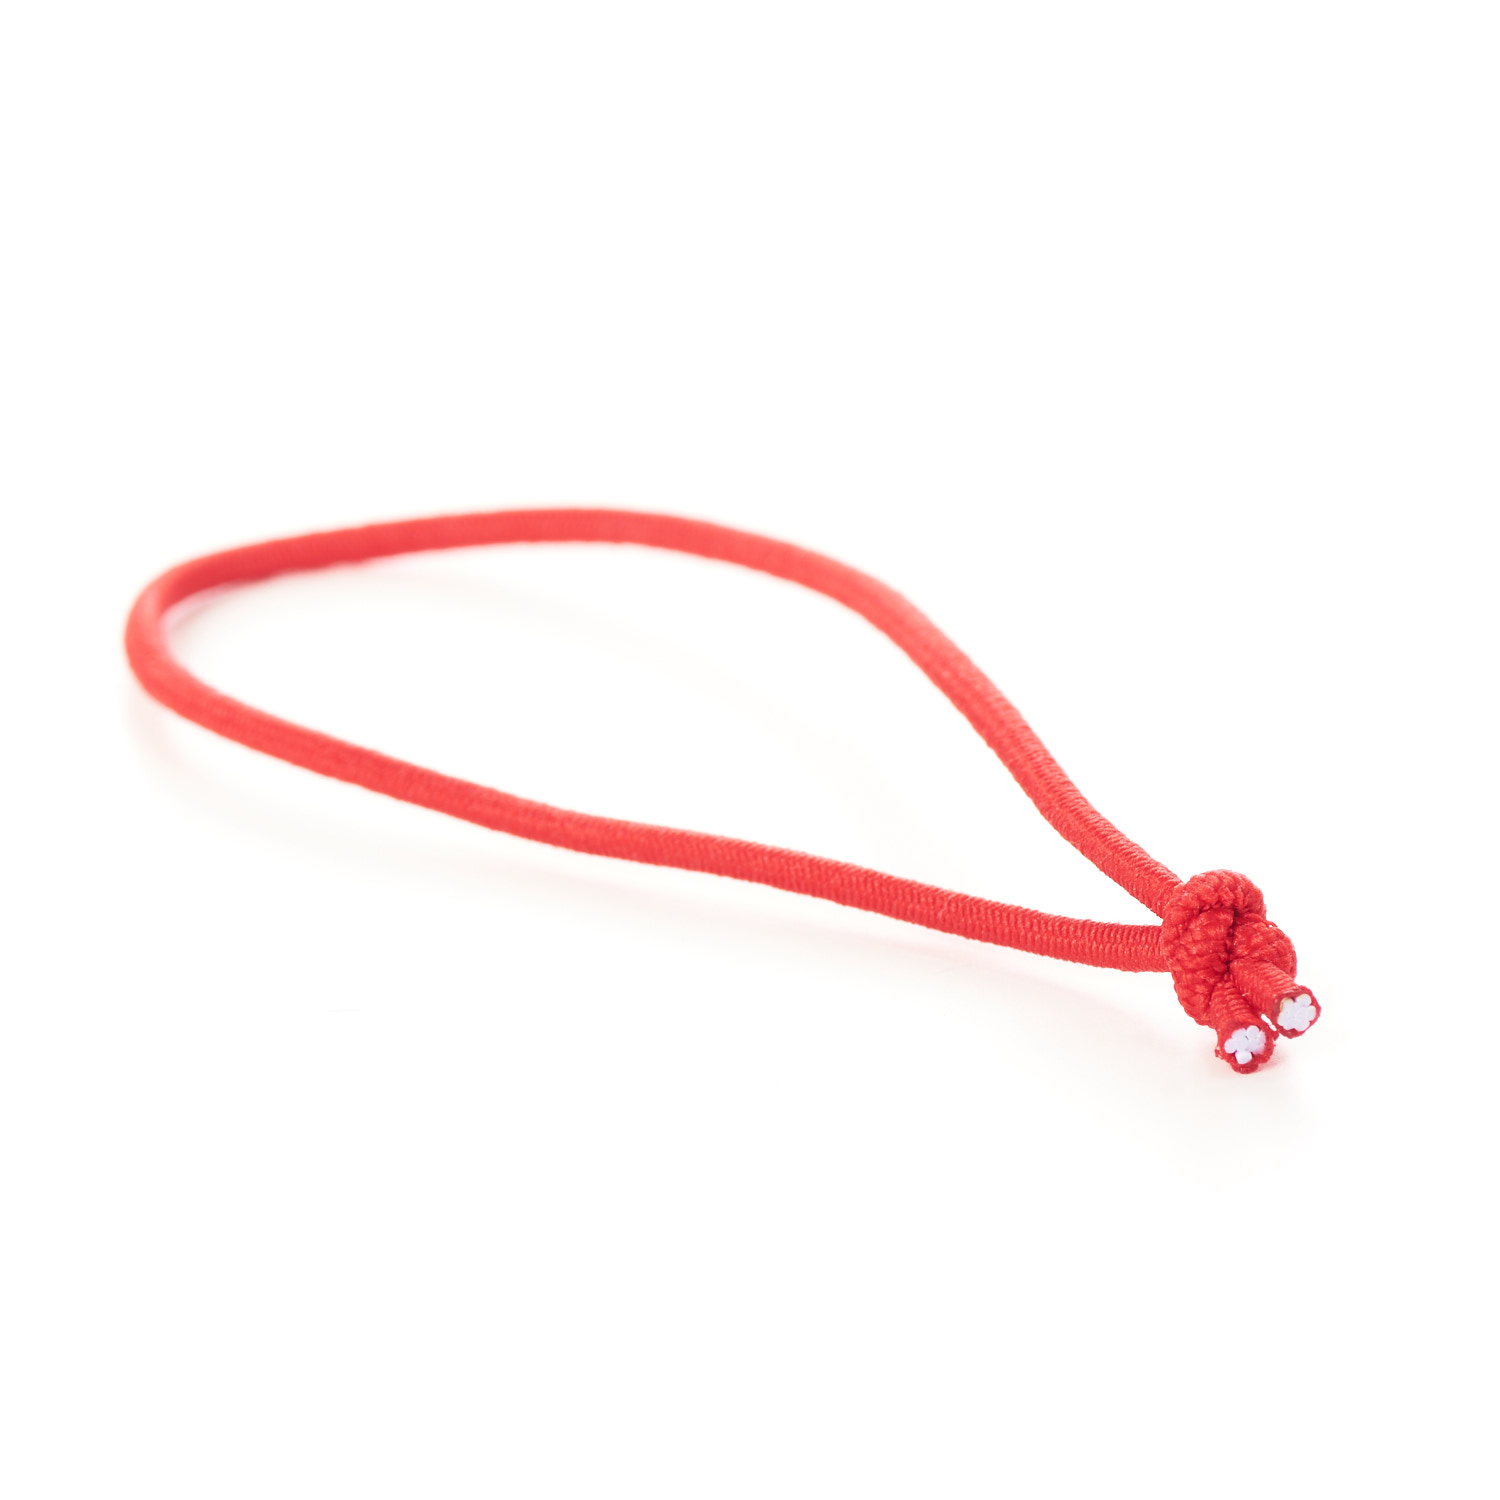 Knotted Elastic Loops Tied Menu Loop Red